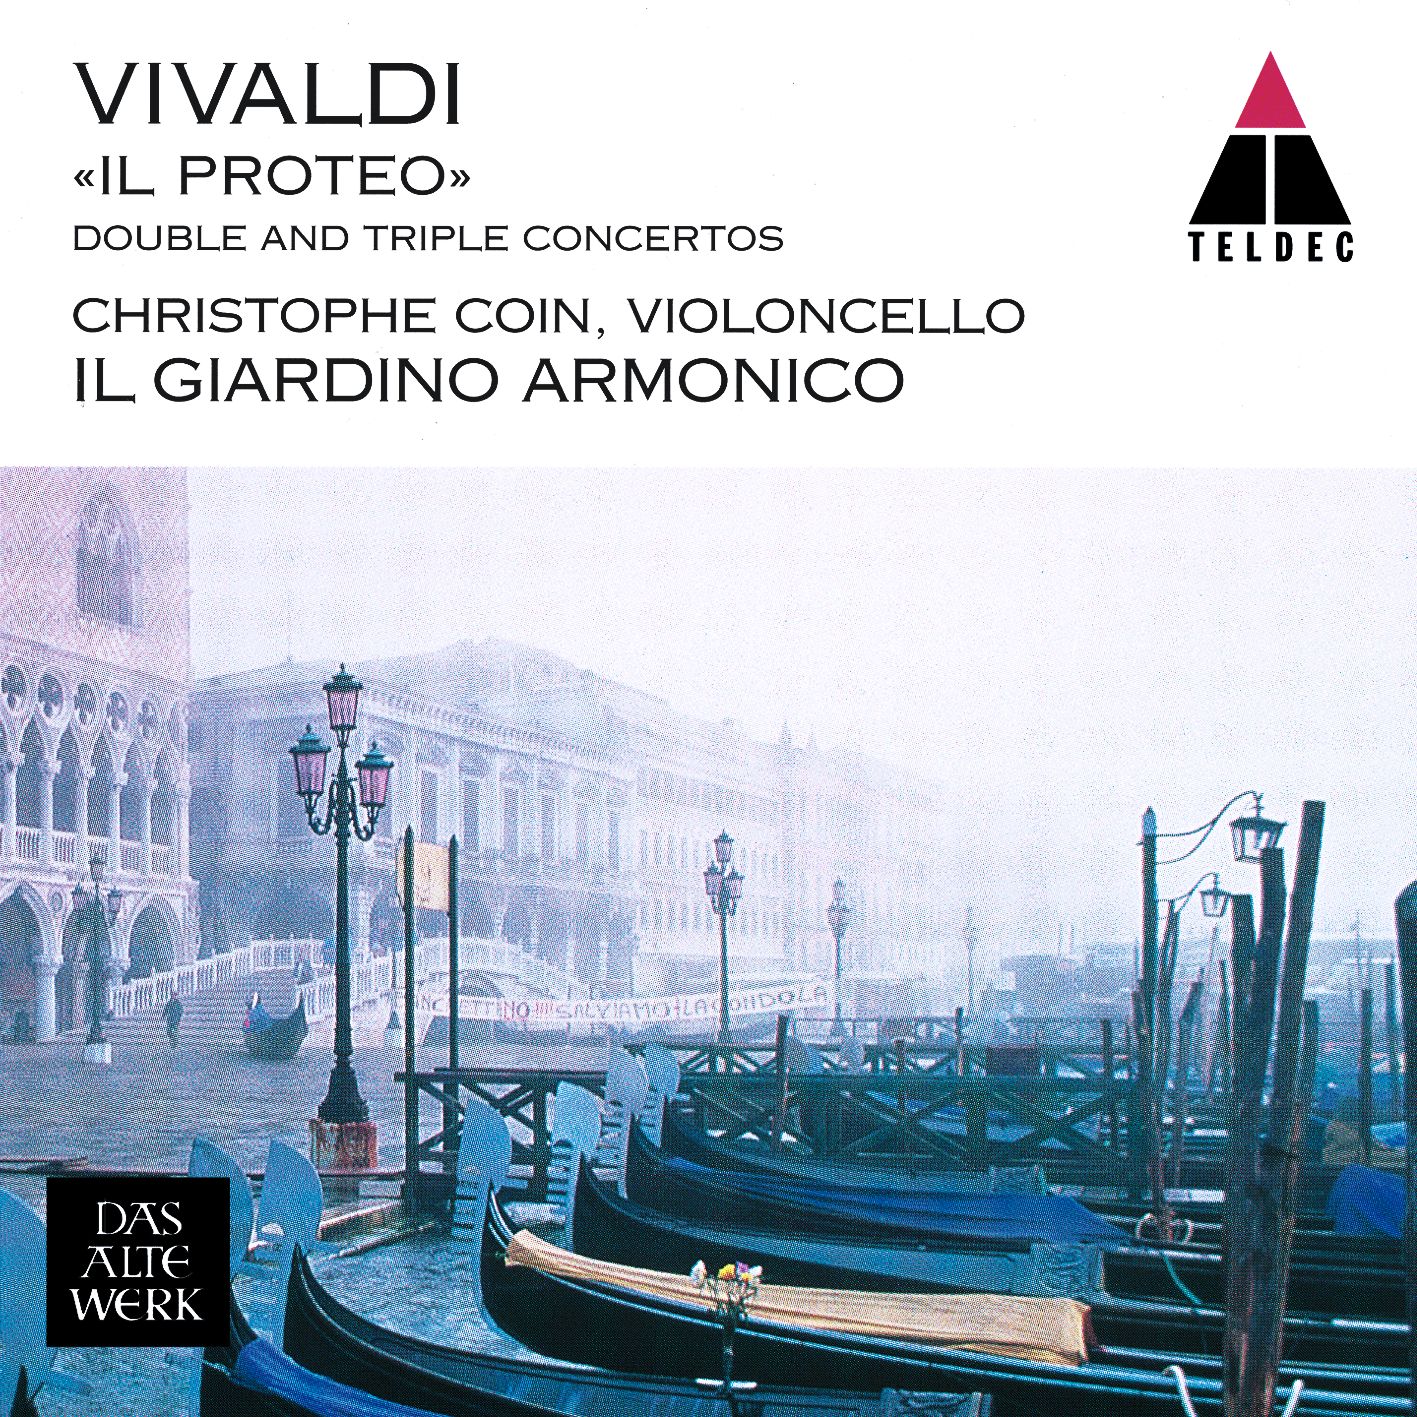 Vivaldi concerto for two cellos